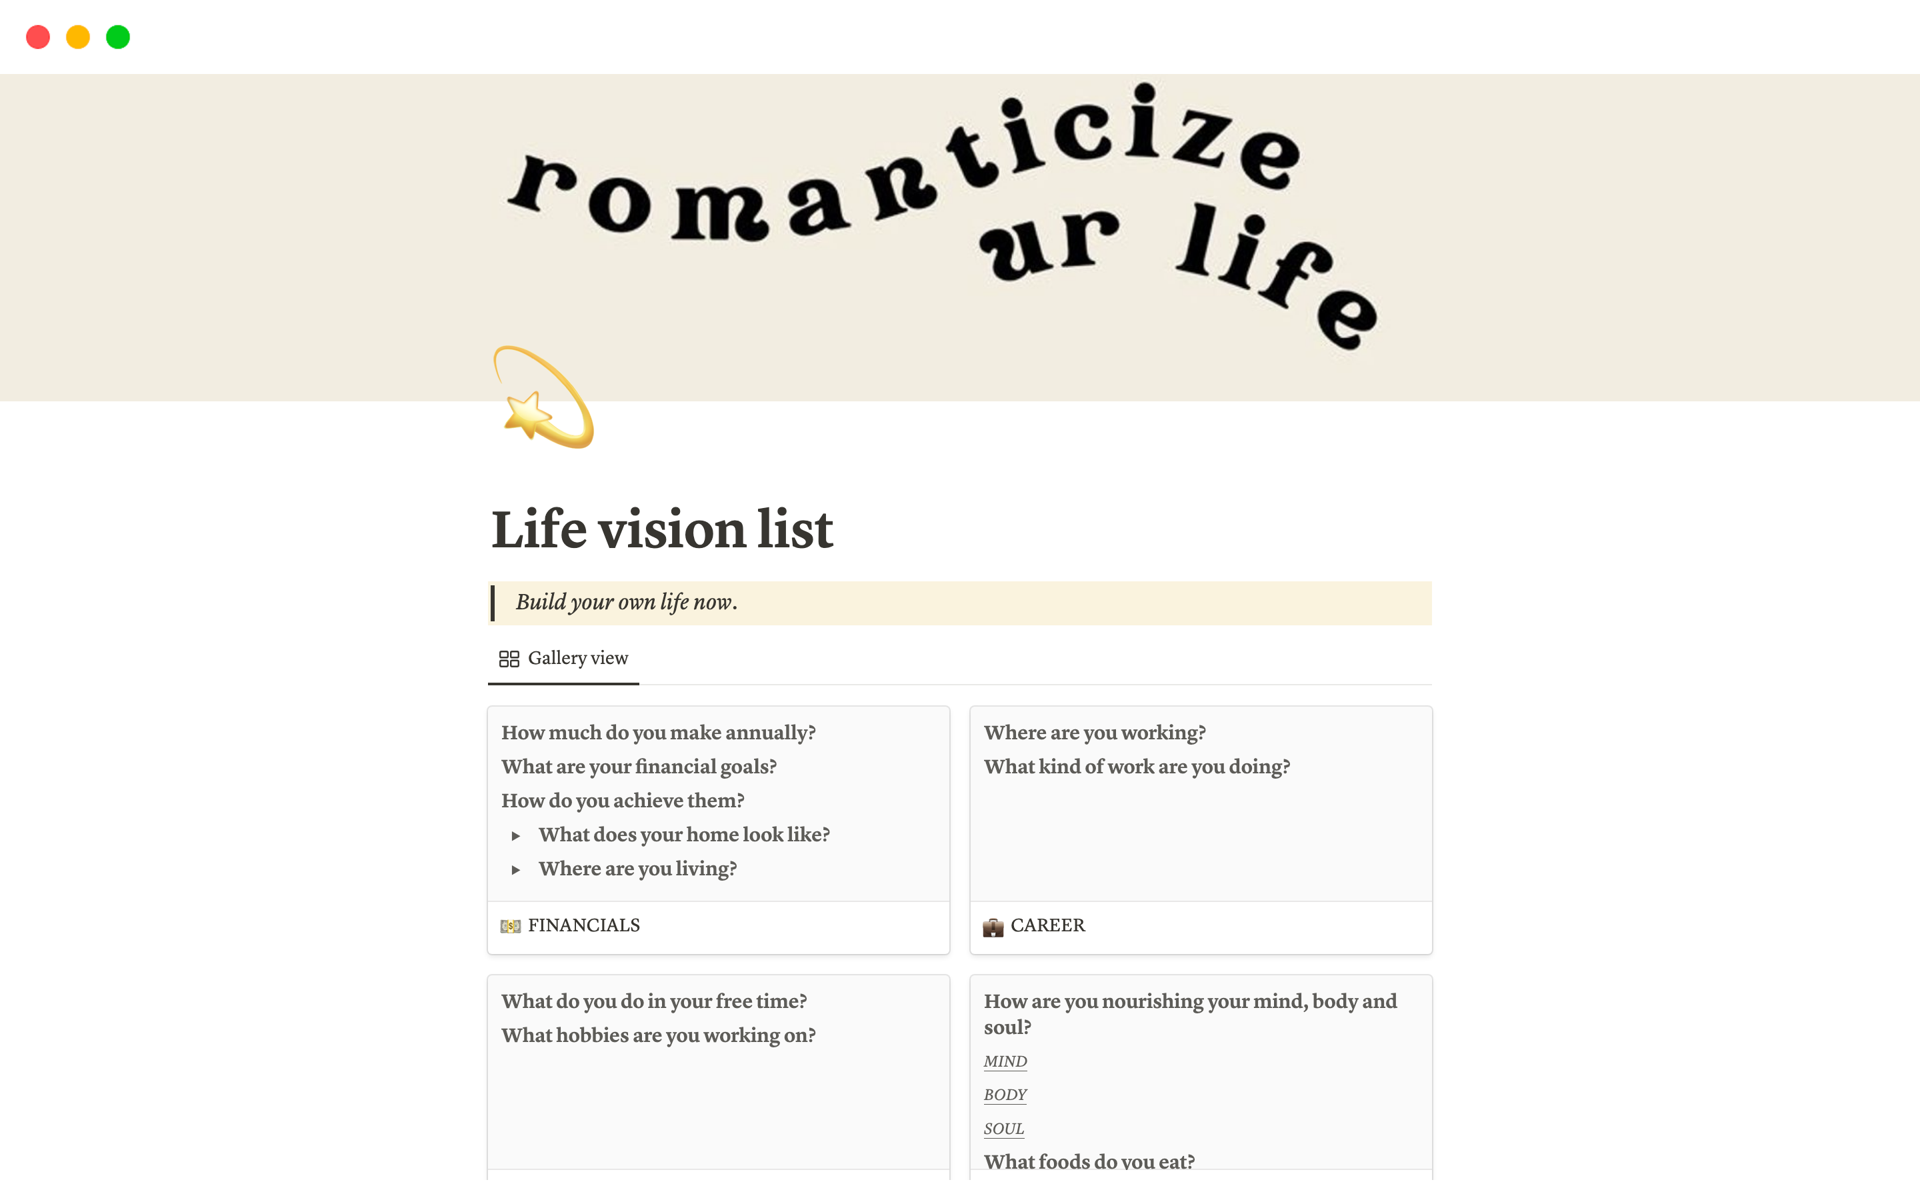 Life vision listのテンプレートのプレビュー